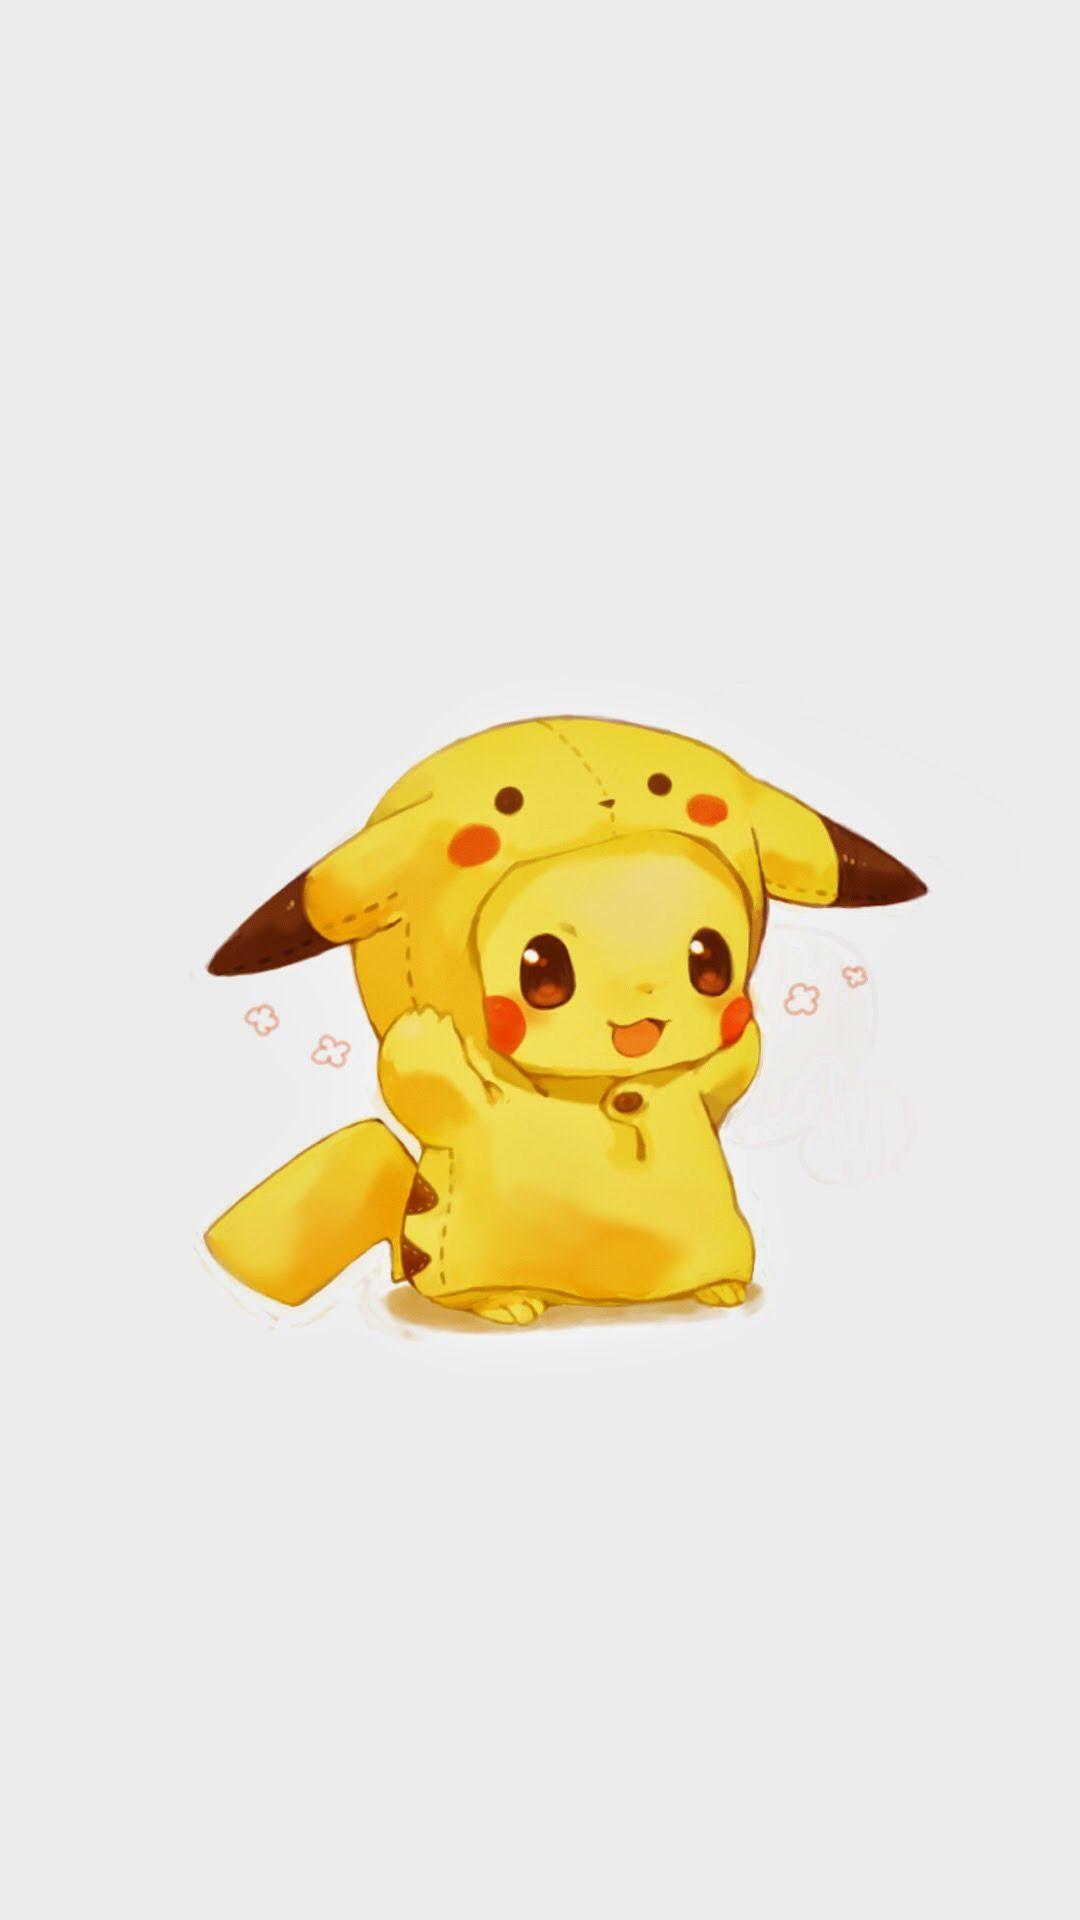 Cute Pikachu Wallpaper Free Cute Pikachu Background